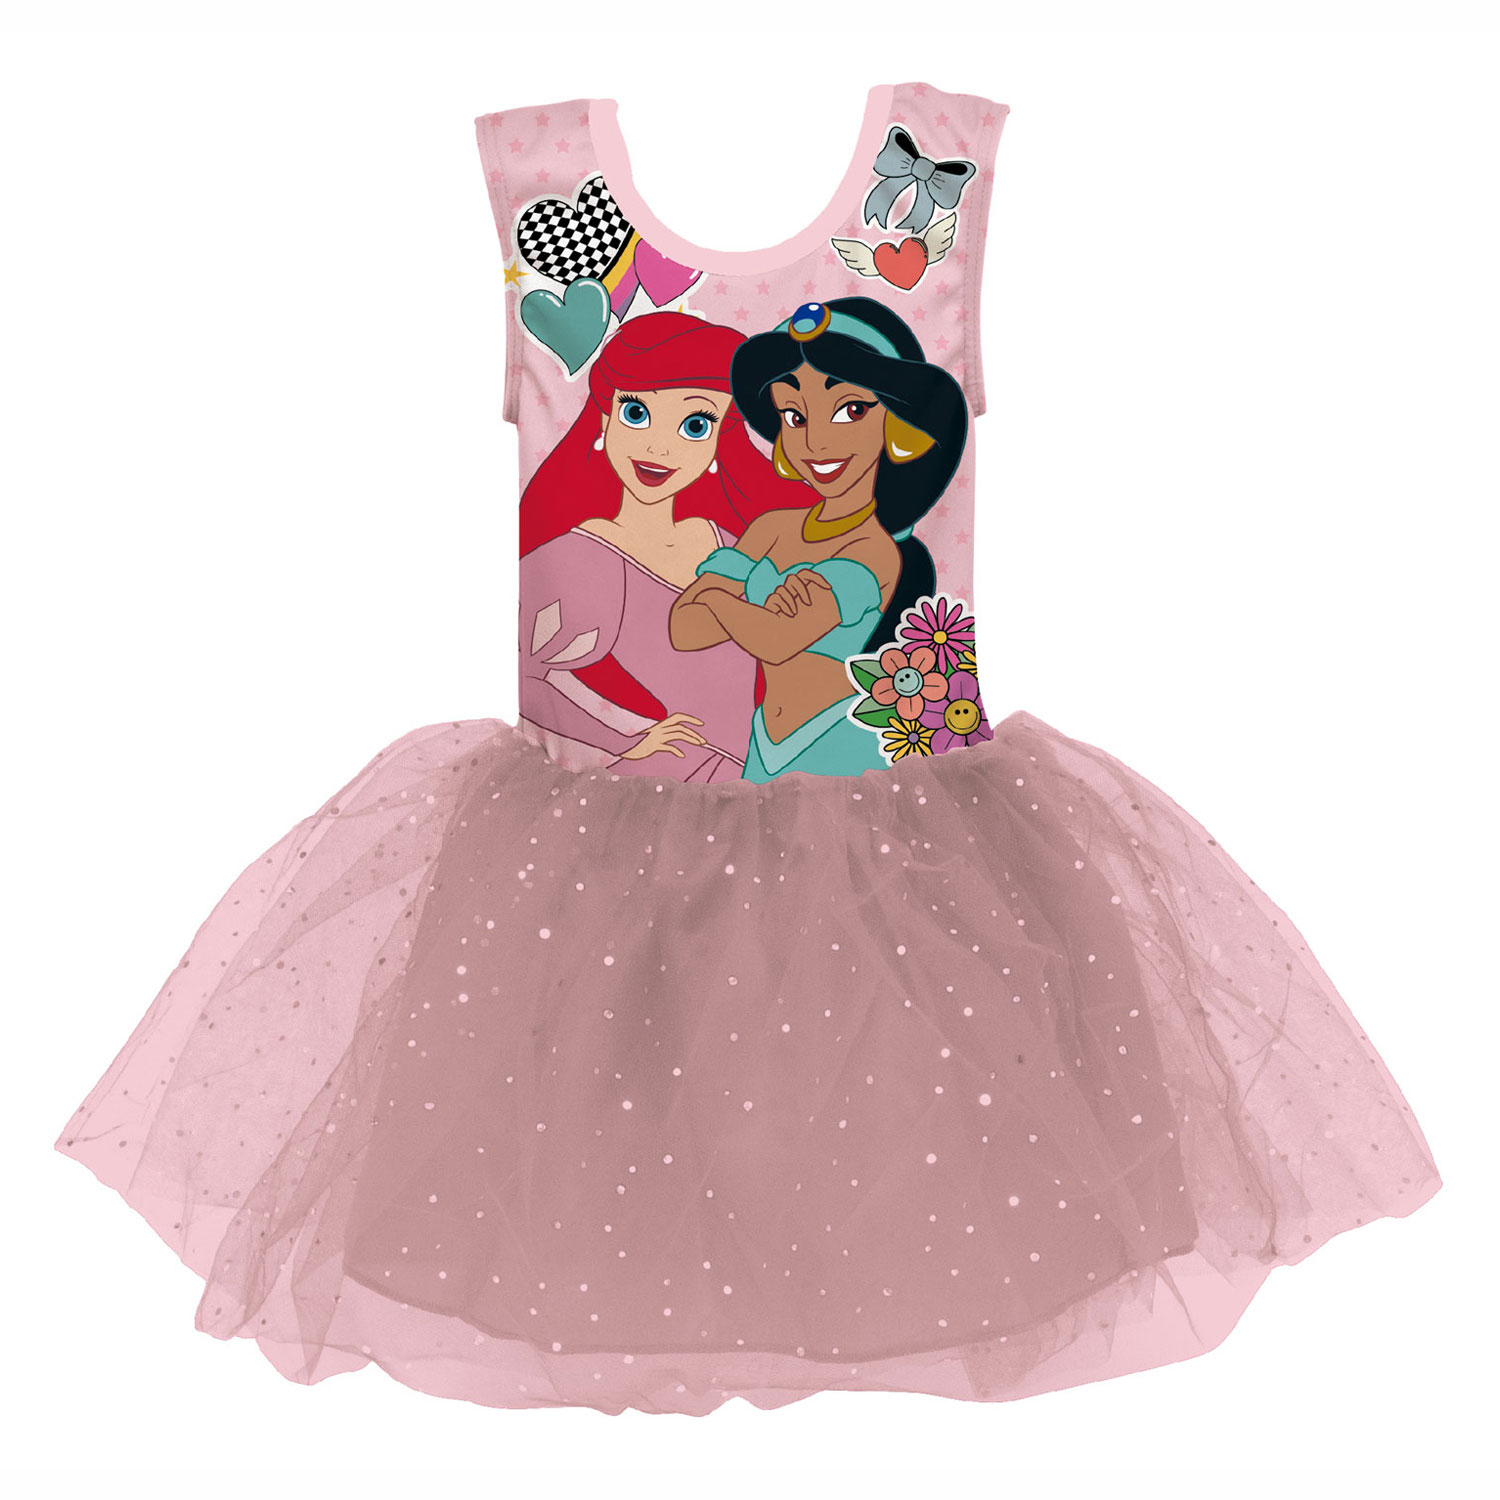 Kinderkostüm Ballett-Tutu Disney Prinses